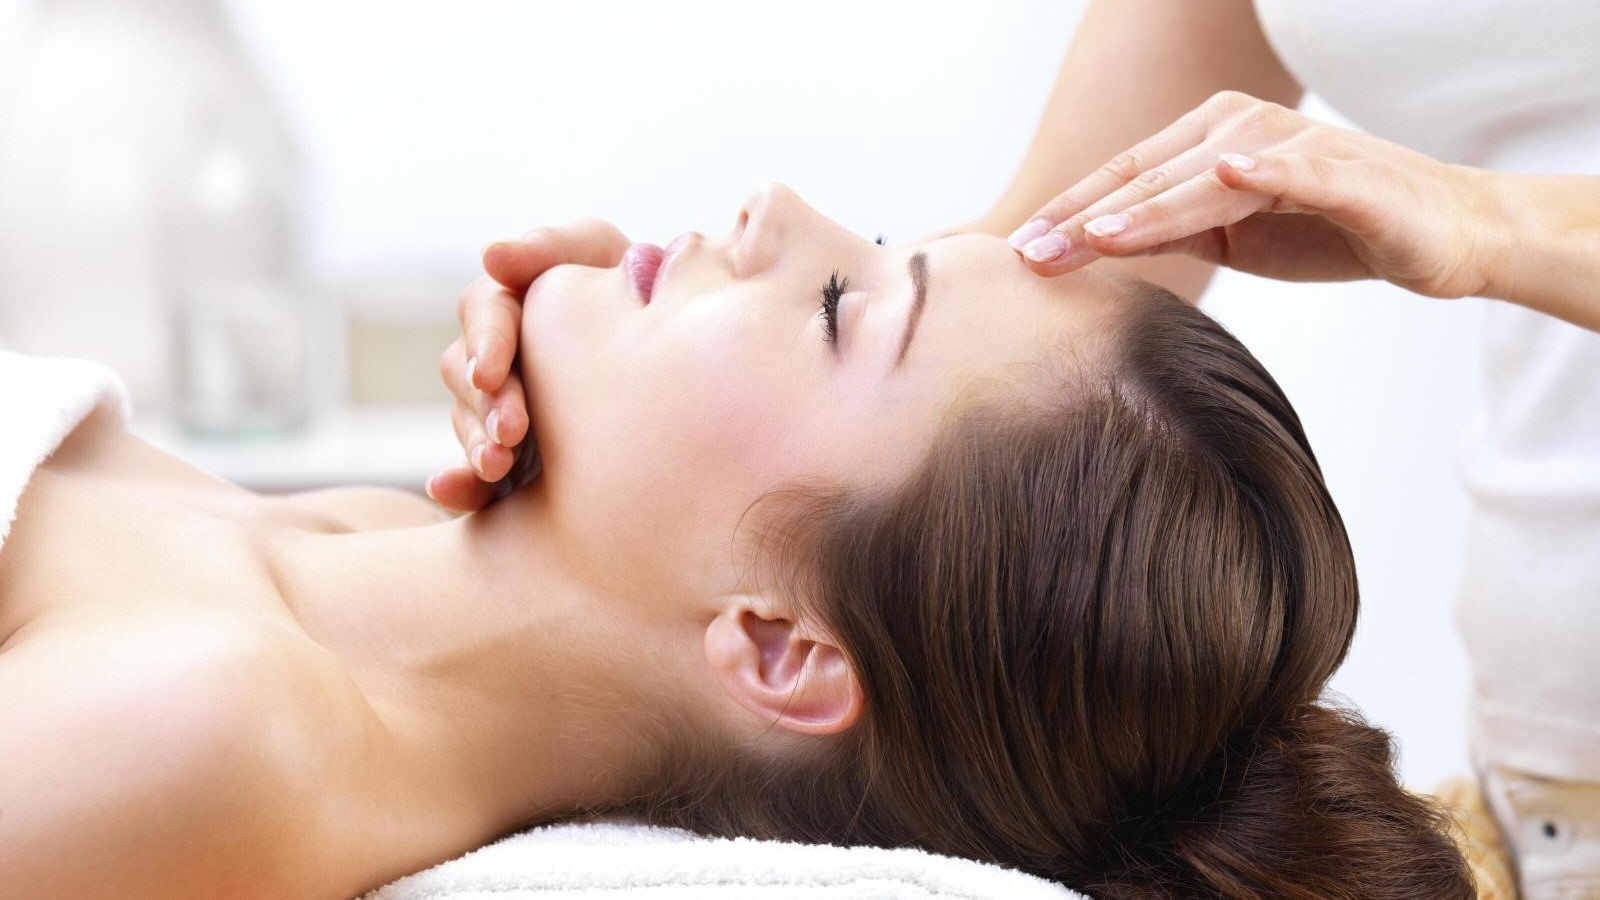 Có phương pháp massage nào hiệu quả để giảm triệu chứng liệt dây thần kinh số 7 không?